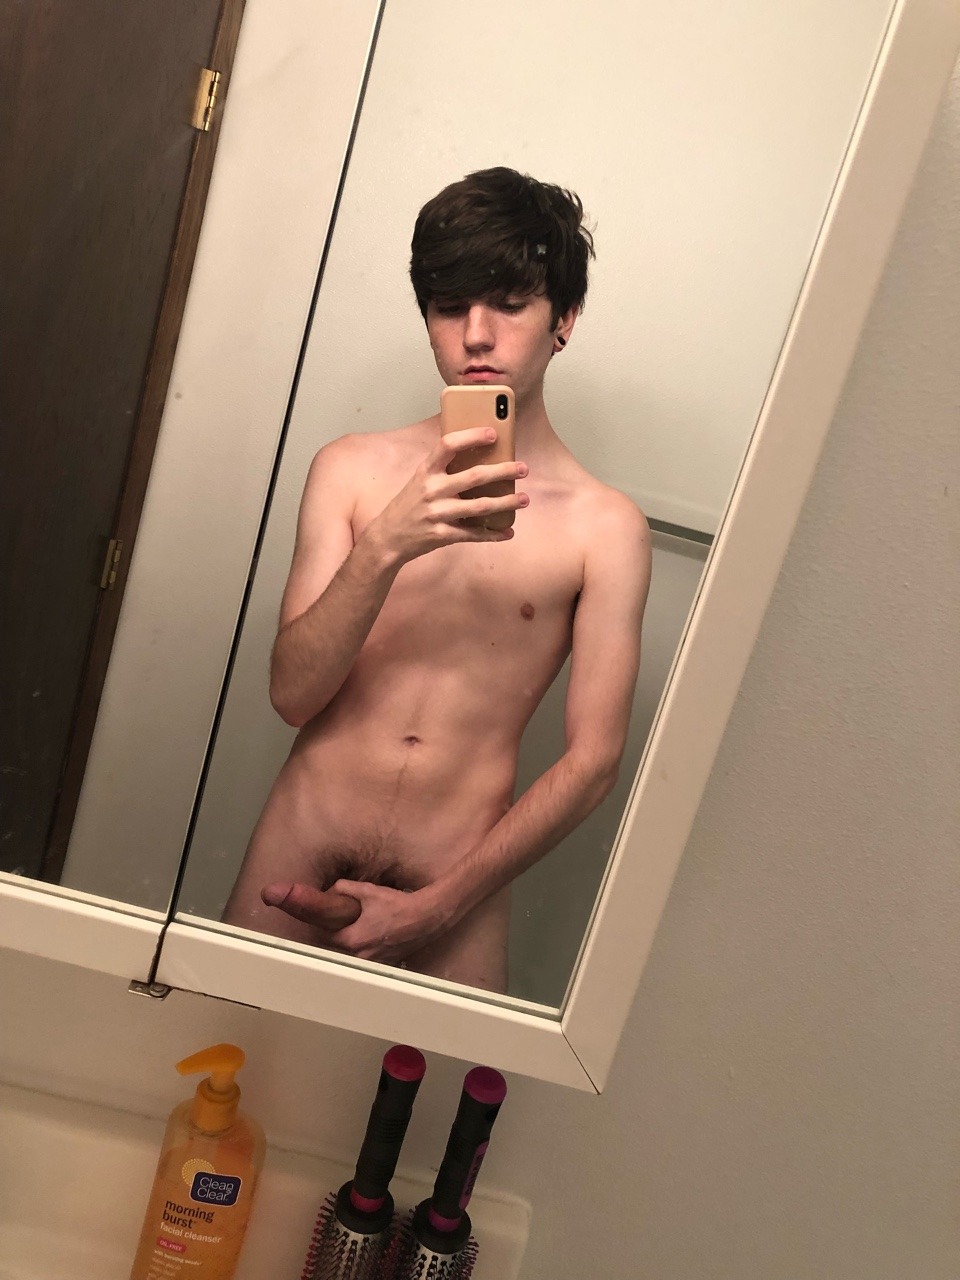 Cute nude mirror boy taking a selfie